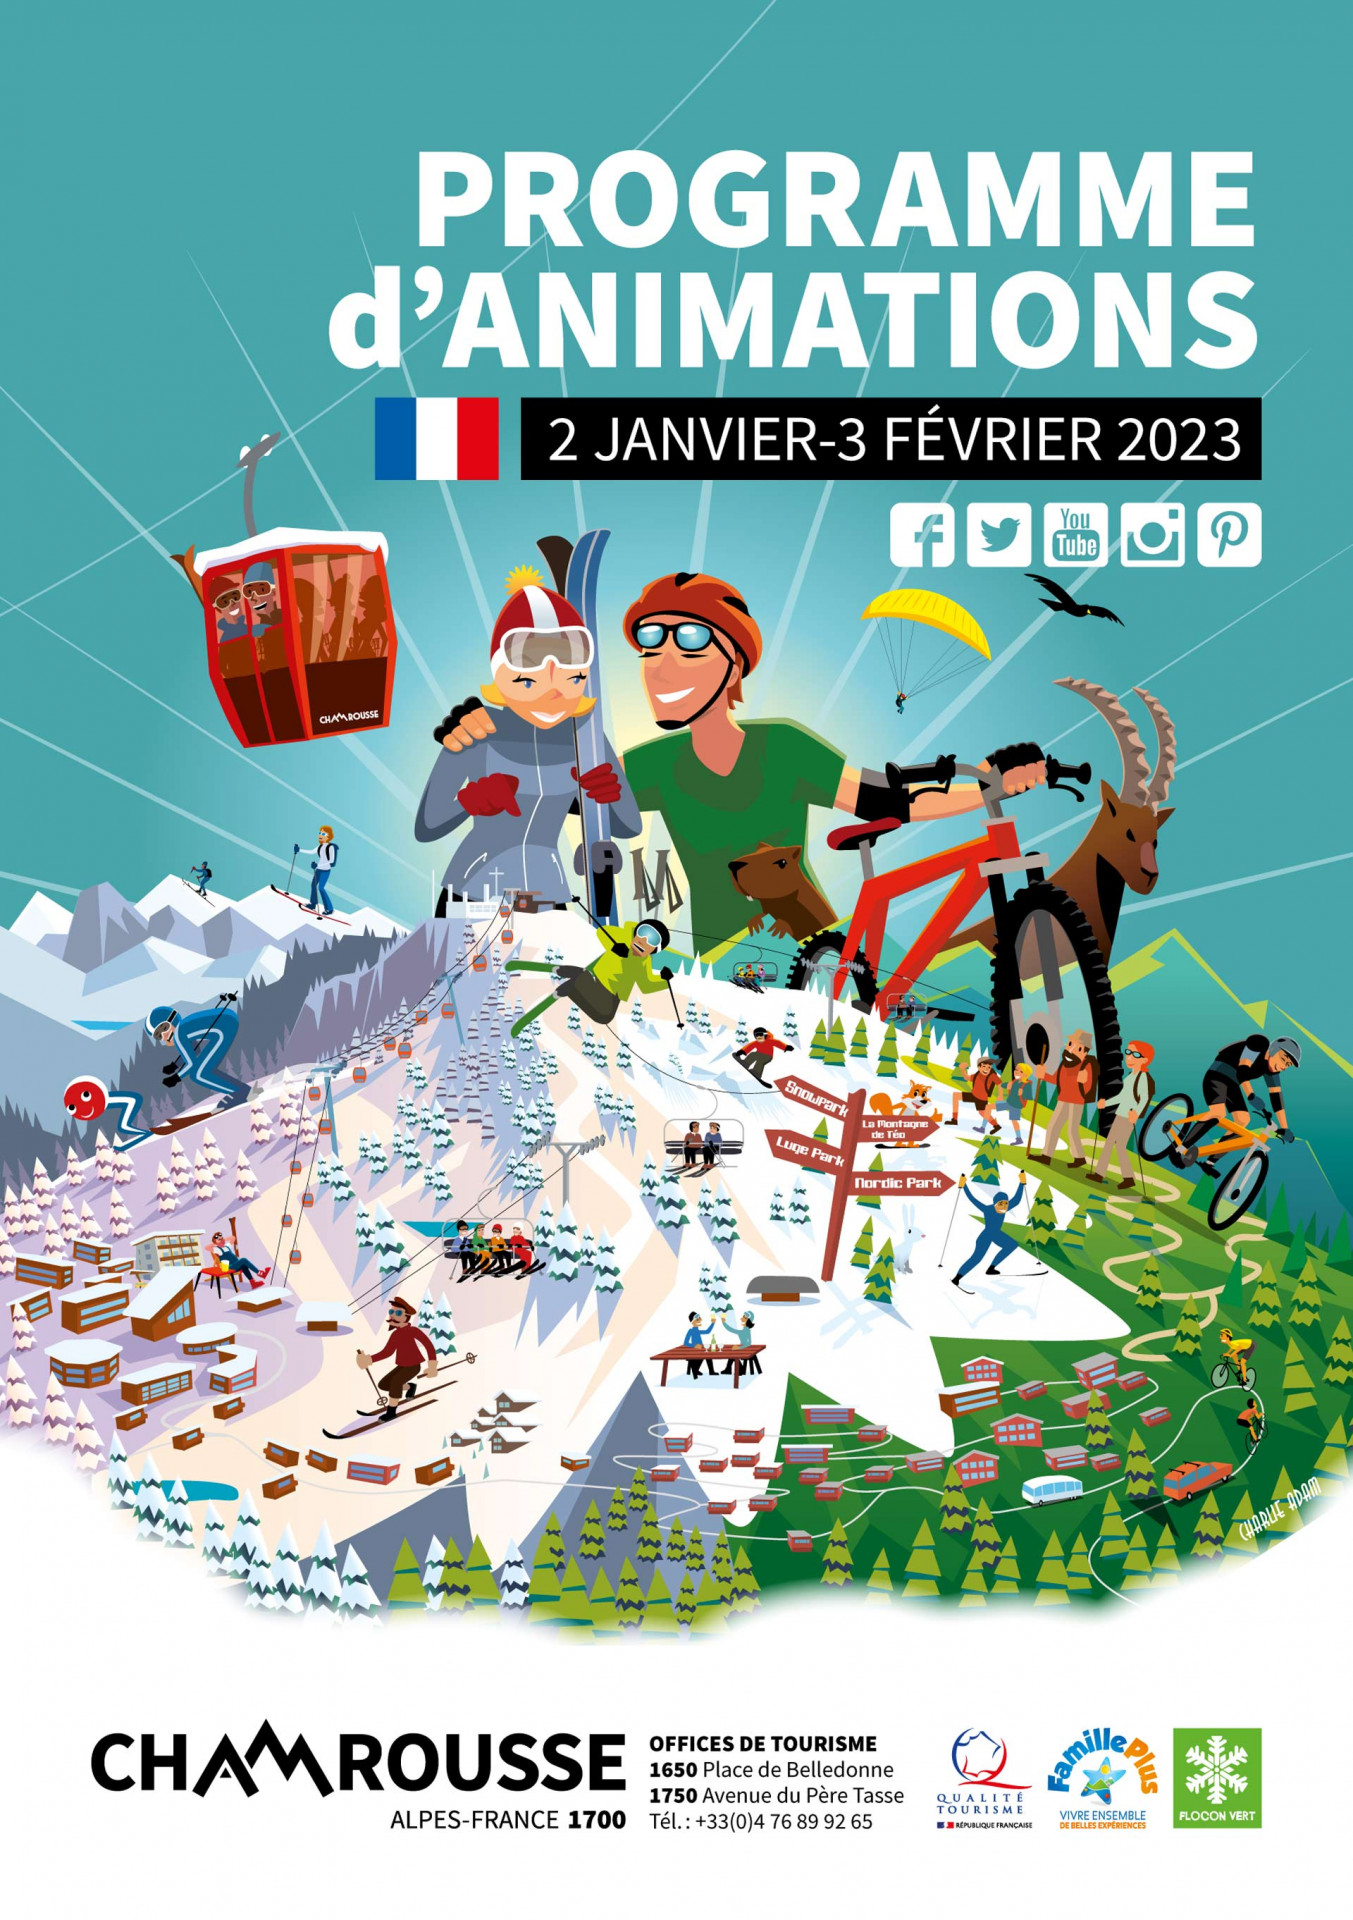 Chamrousse programme animation événement hiver janvier 2023 station ski montagne grenoble isère alpes france